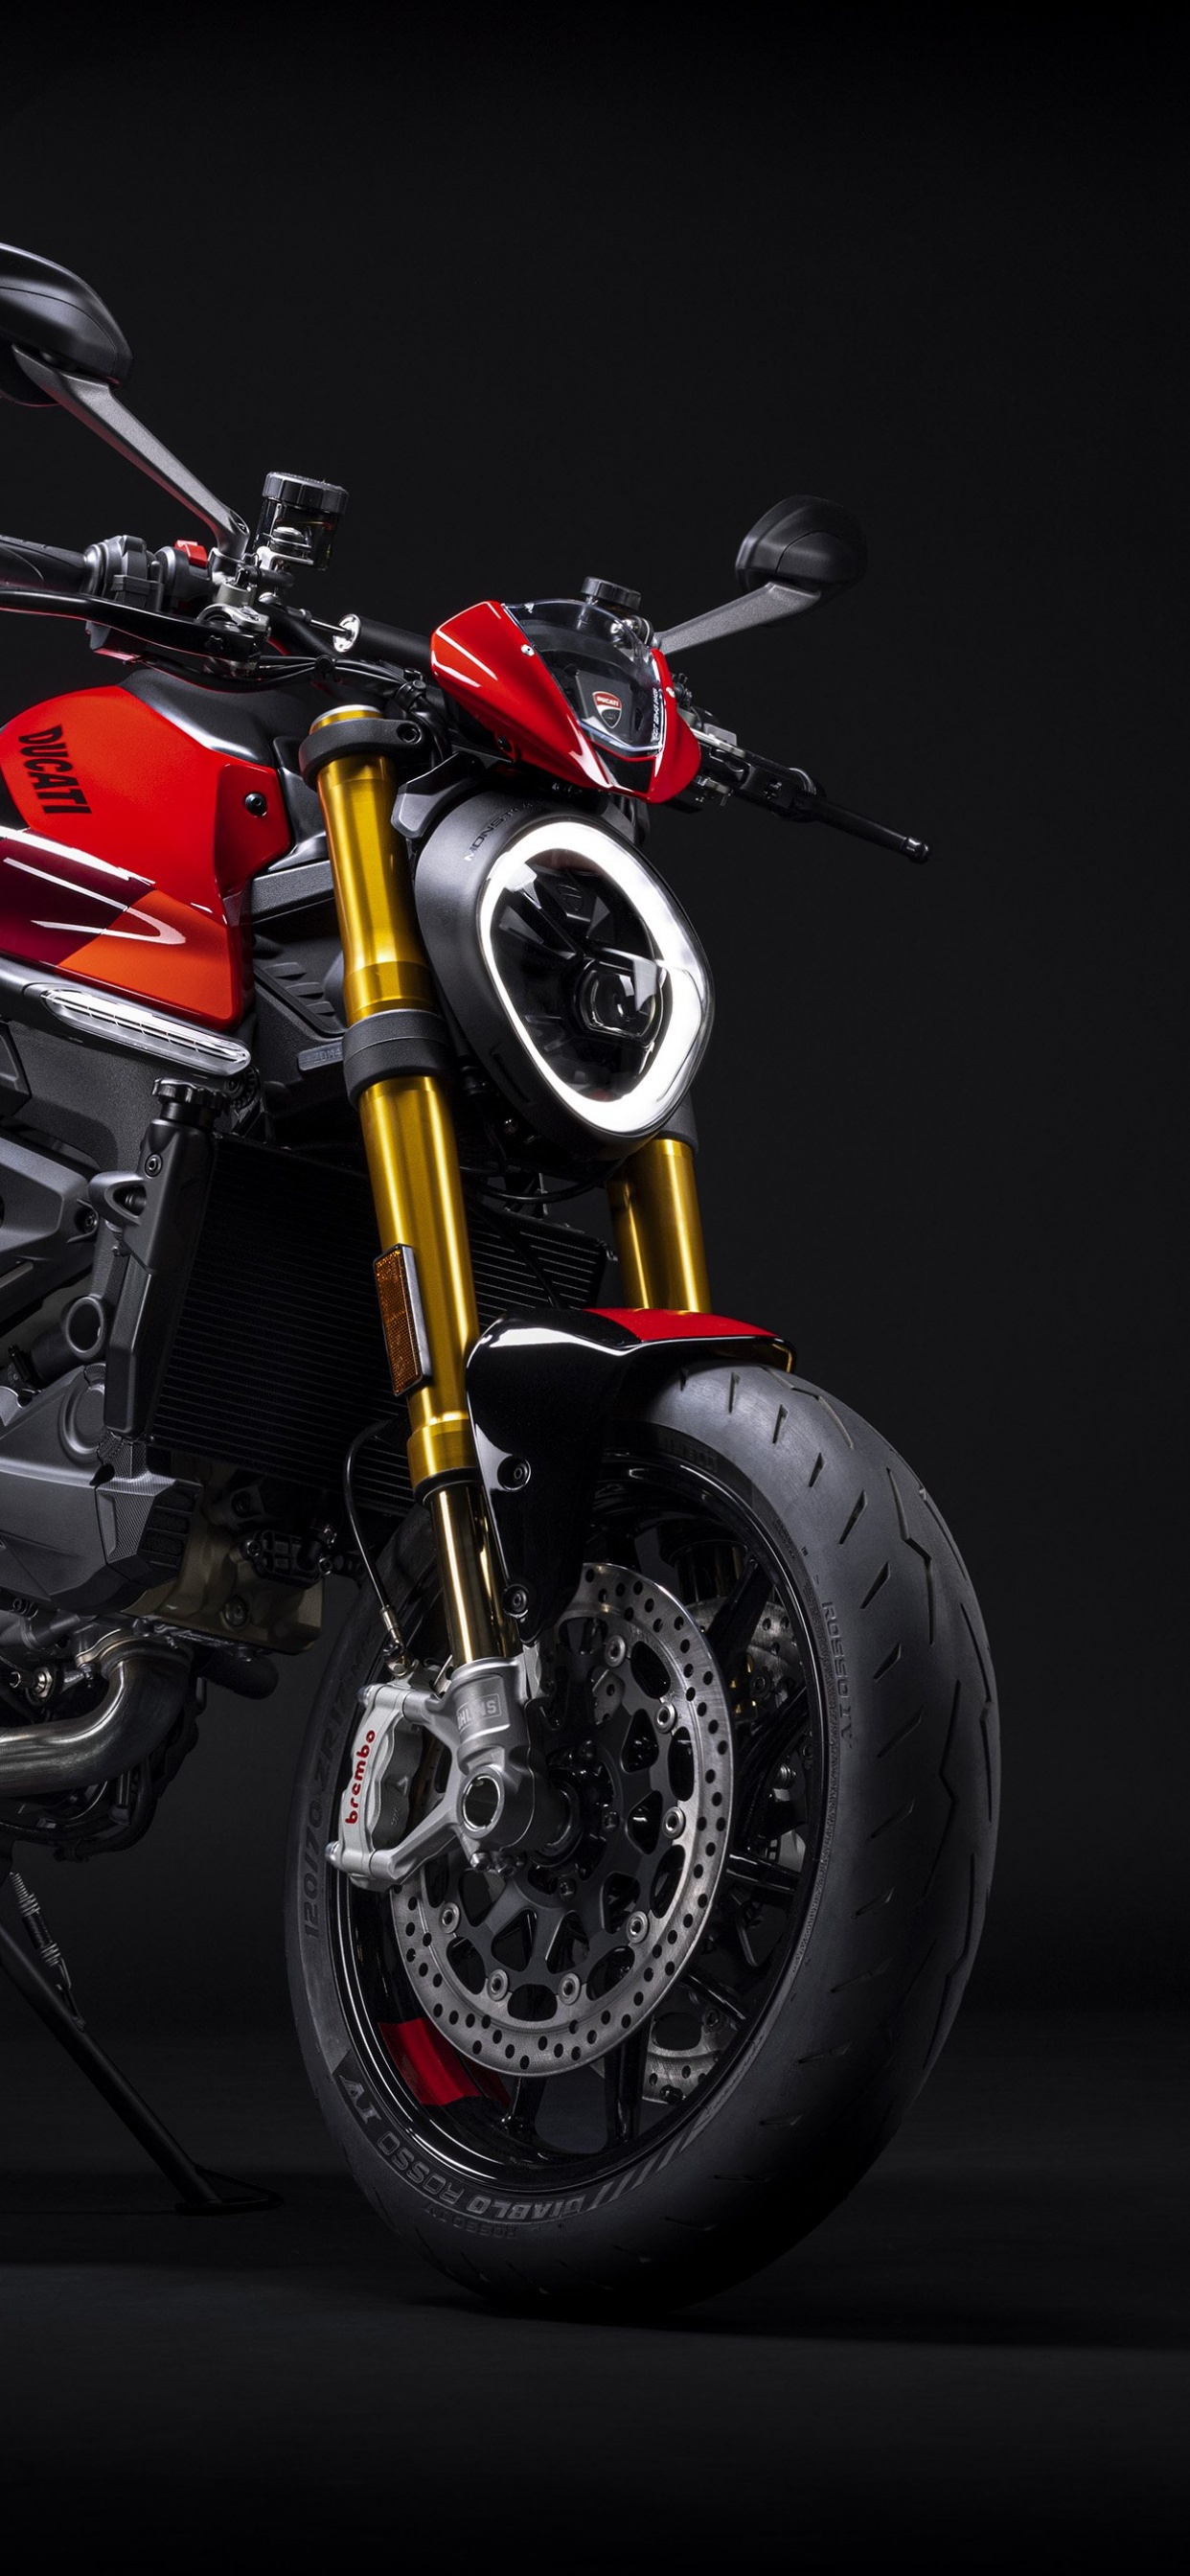 Ducati Monster SP: Sự kết hợp giữa vẻ đẹp đậm chất italia và sức mạnh khỏe mạnh, đó là Ducati Monster SP. Với khả năng vận hành hiệu quả và tính năng an toàn nâng cao, Ducati Monster SP mang đến cho người lái một trải nghiệm tuyệt vời. Hãy cùng nhìn ngắm các hình ảnh của mẫu xe này, bạn sẽ phải trầm trồ trước sự đẹp đẽ và công nghệ tiên tiến của nó!